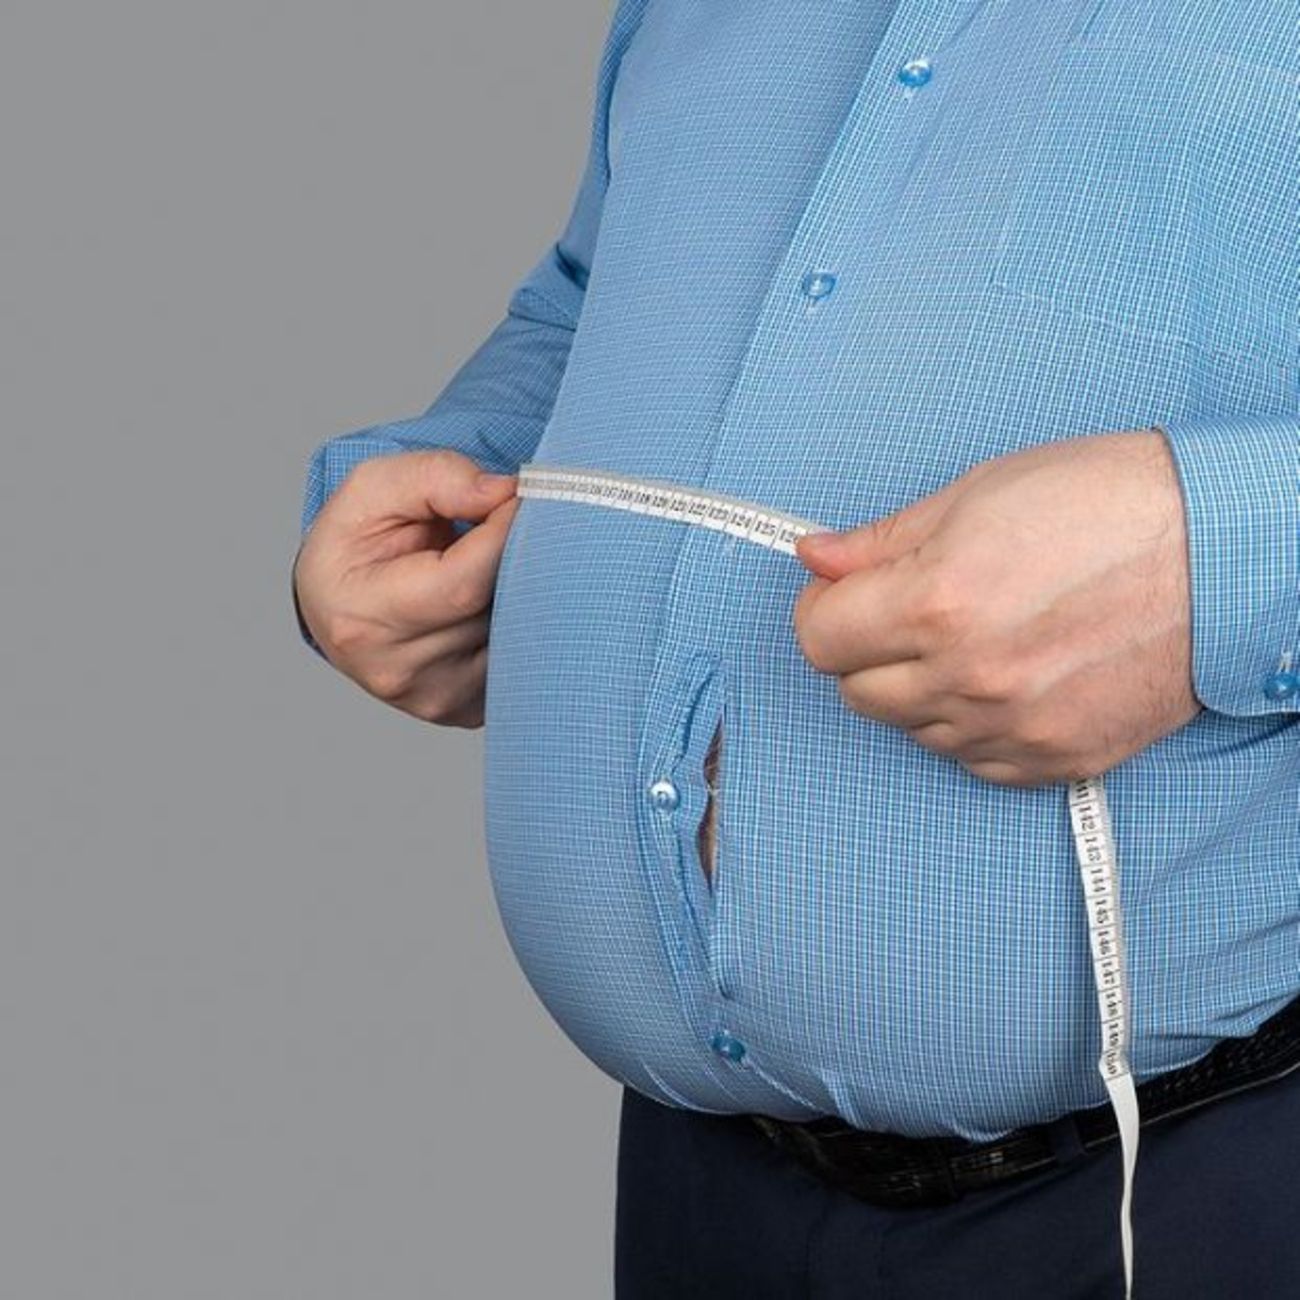 La obesidad agrava las enfermedades reumáticas y reduce la eficacia del tratamiento (Big Stock)